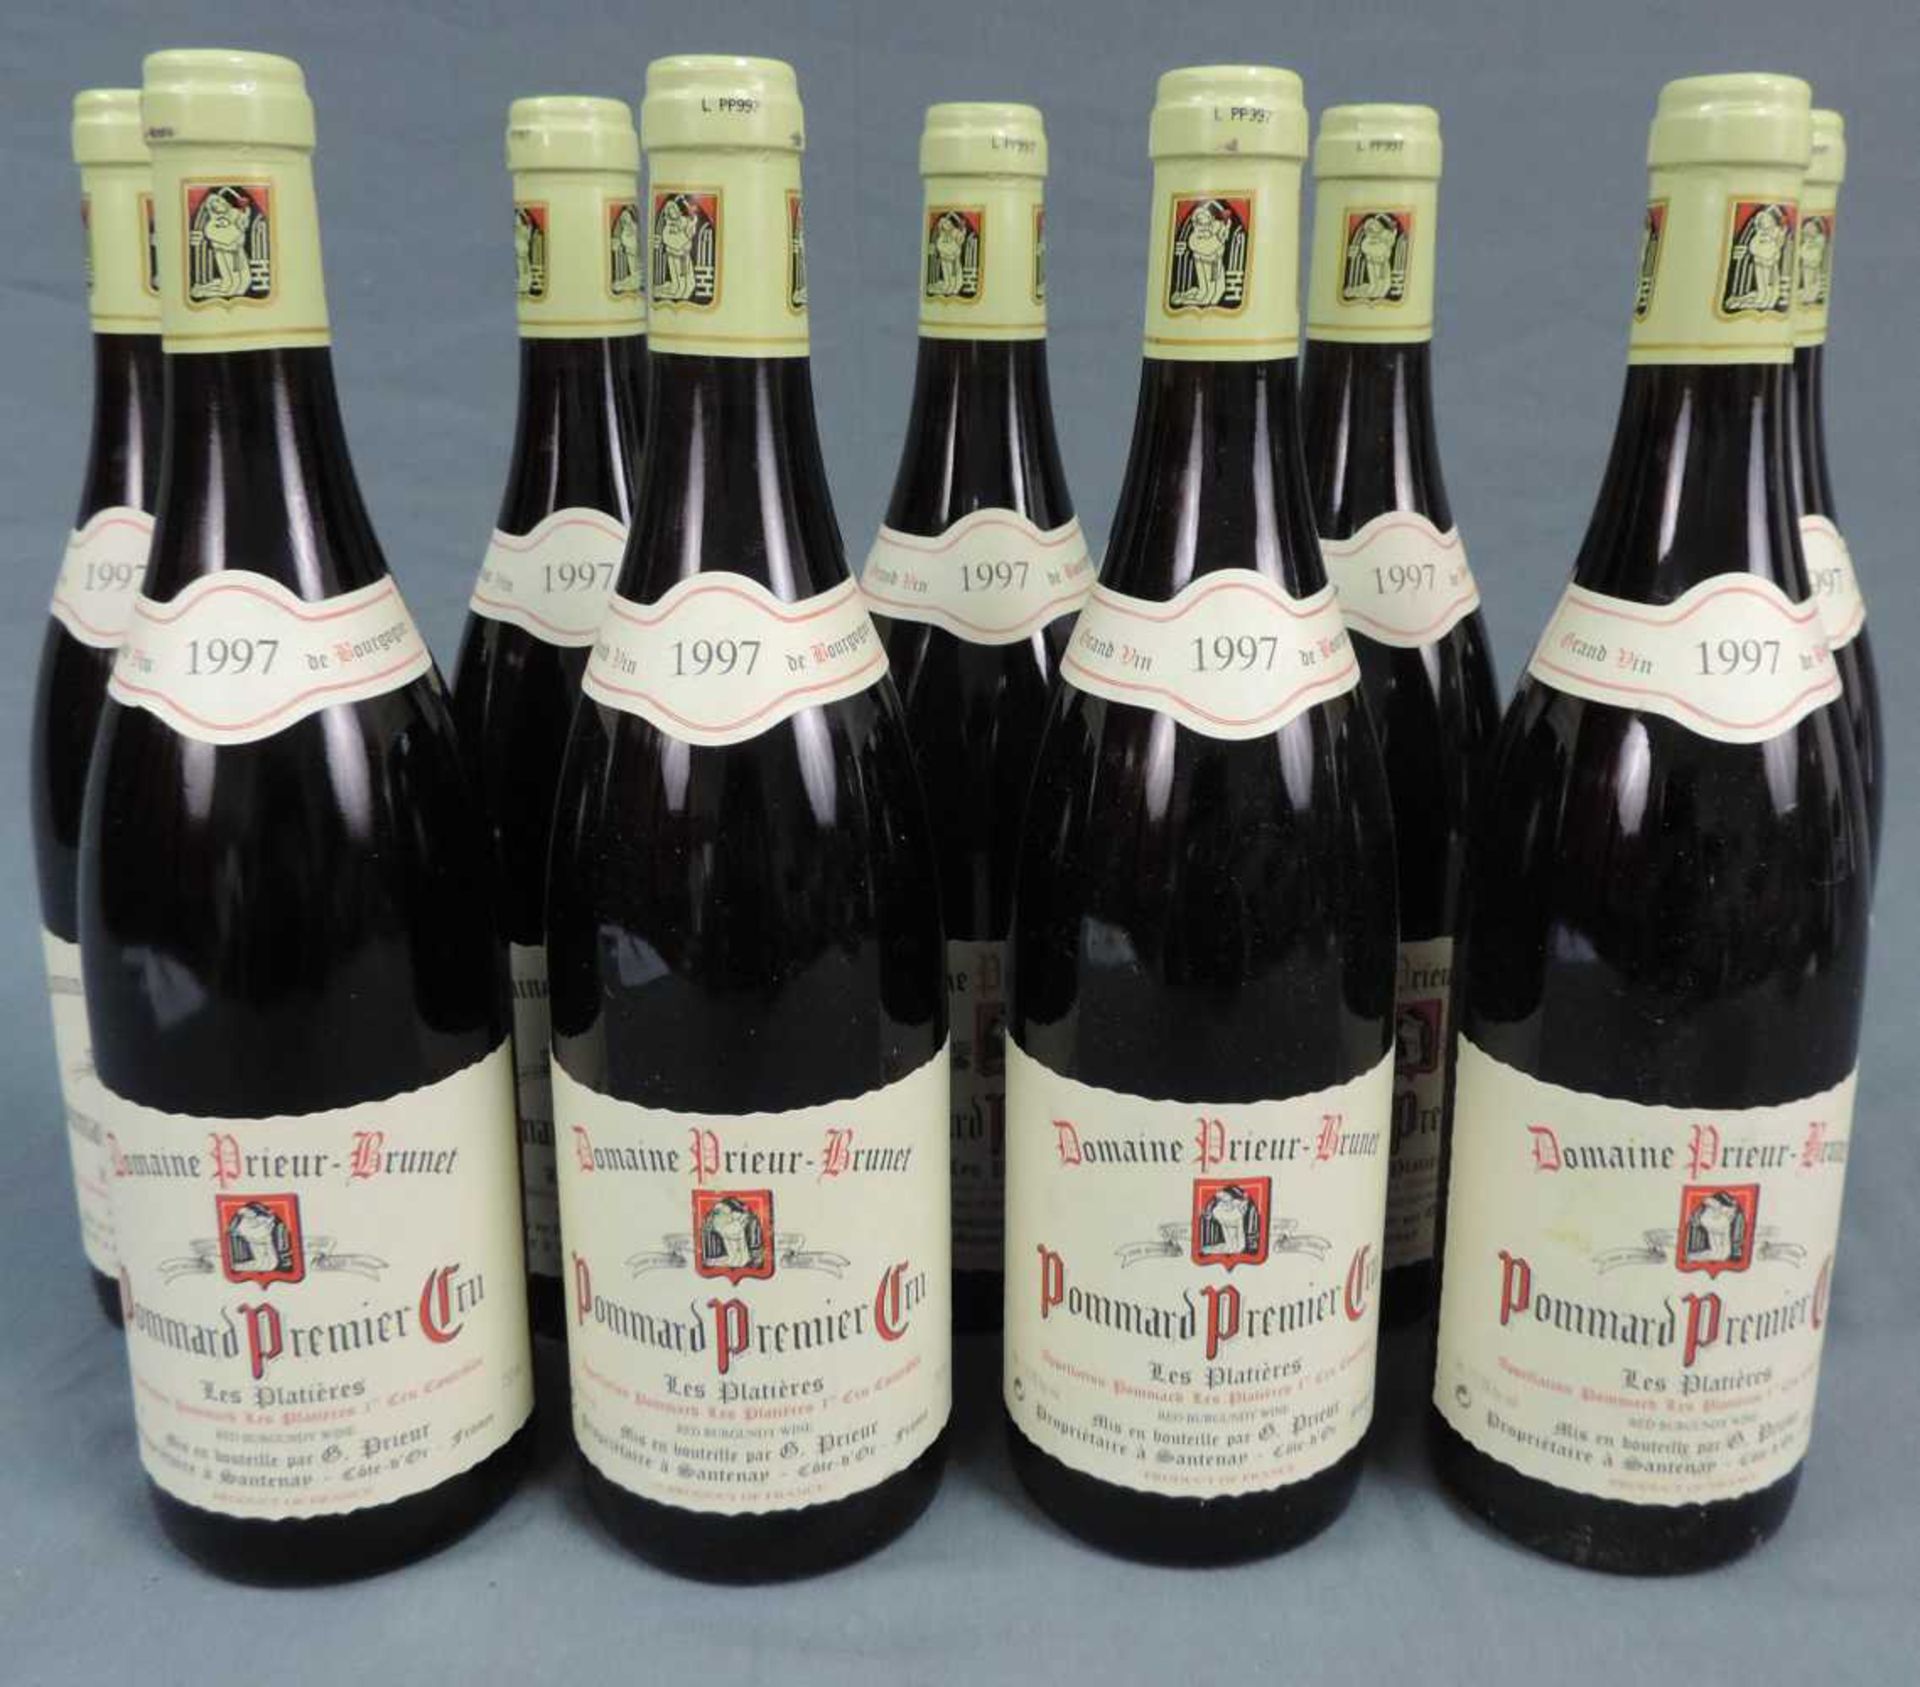 1997 Domaine Prieur - Brunet, Pommard Premier Cru Les Platieres, France. 9 Flaschen, 750 ml, Alc.,